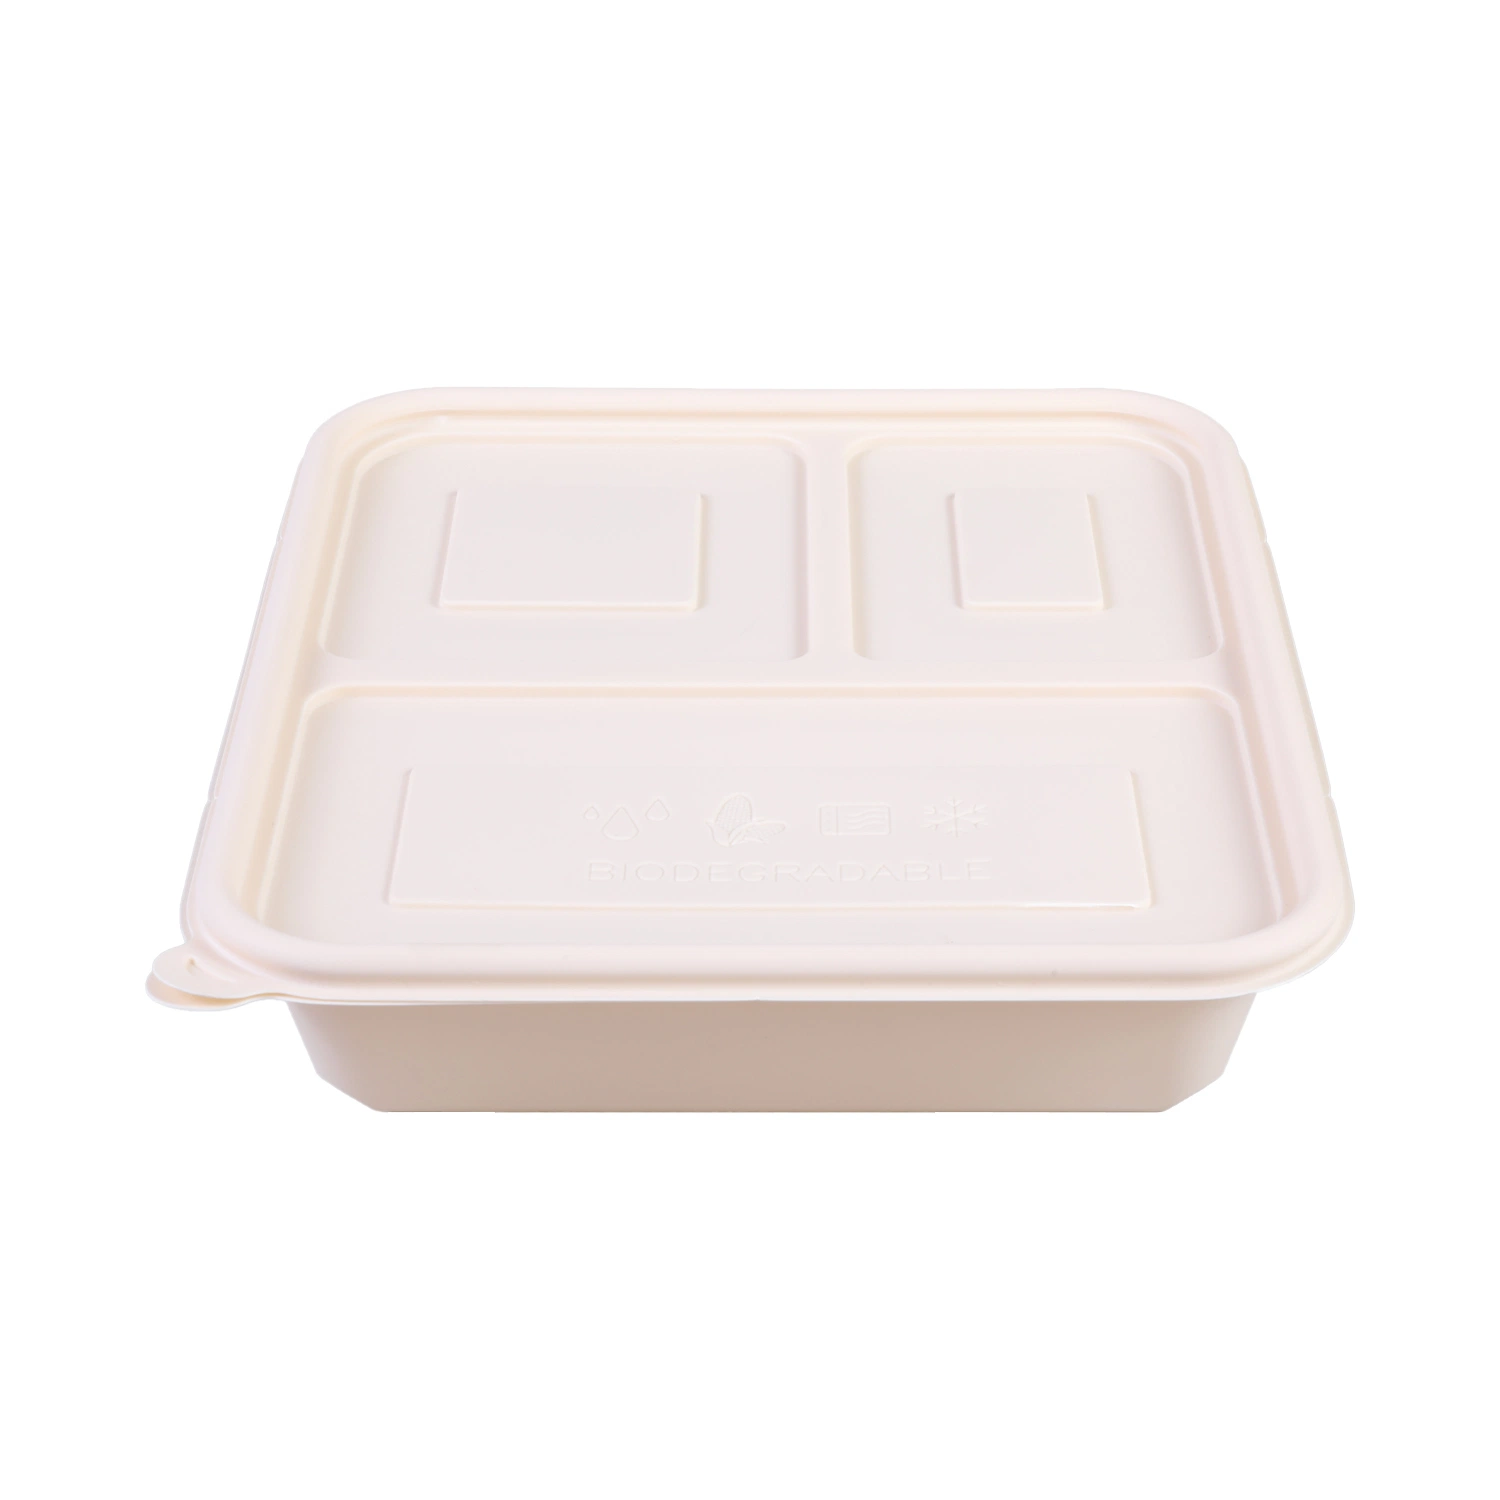 Harina de almidón de maíz biodegradable contenedor de alimentos almuerzo-Caja para 4/5/3 compartimiento